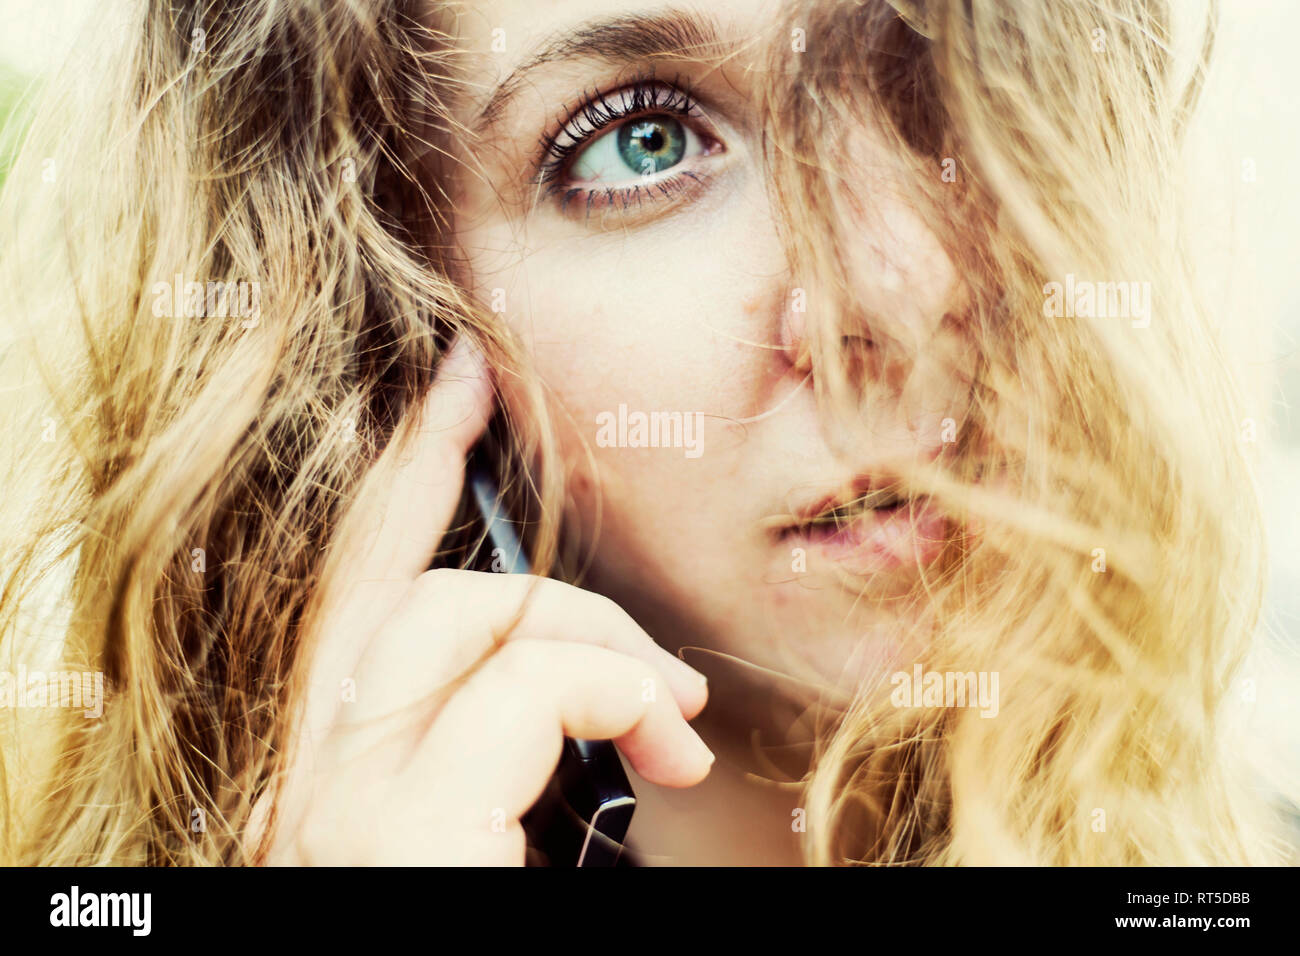 Ritratto di giovane donna al telefono, close-up Foto Stock